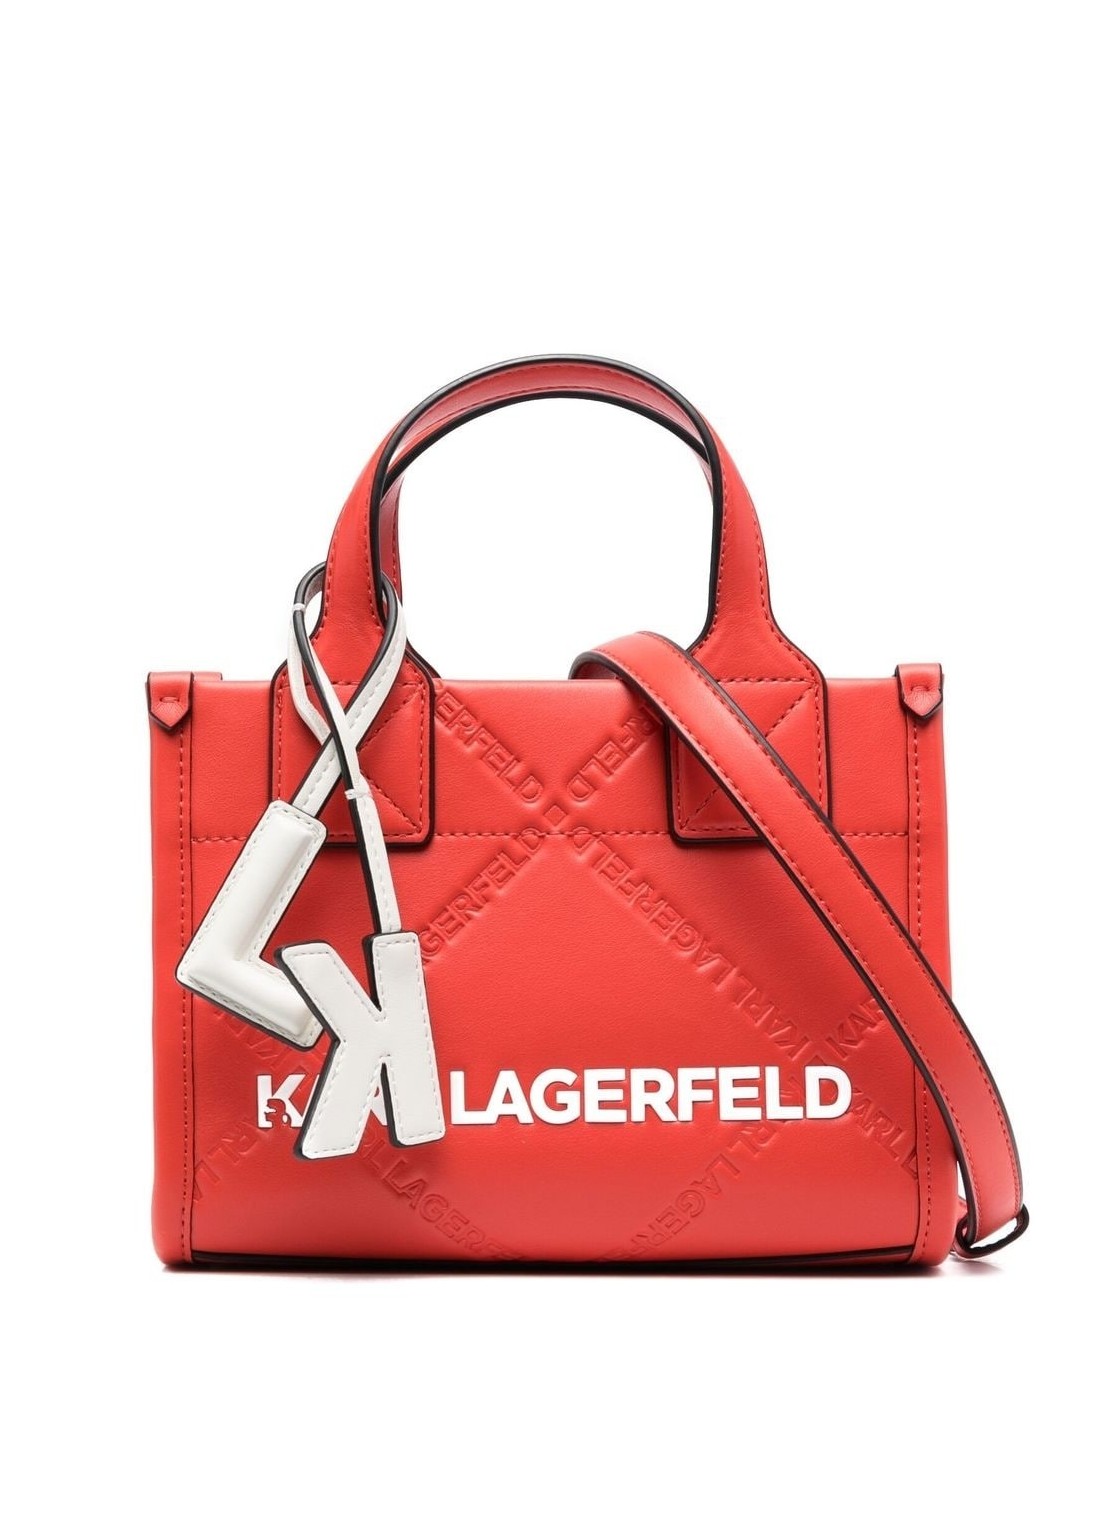 Handbag karl lagerfeld handbag woman k/skuare embossed sm tote 230w3031 a497 talla T/U
 